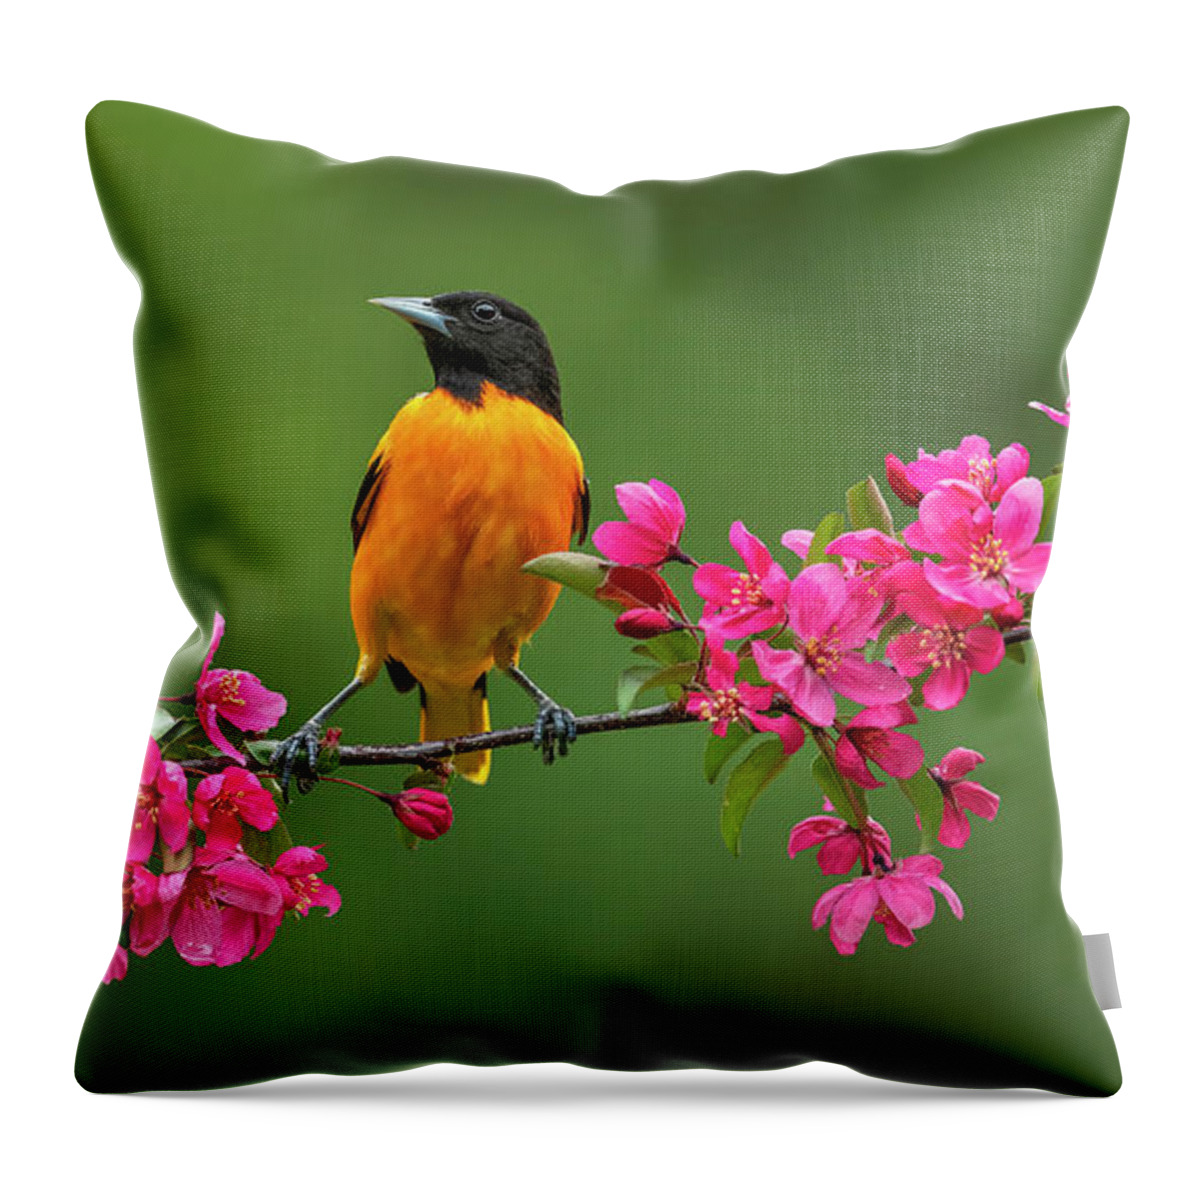 Bird Throw Pillow featuring the photograph Blossom Bird by Peg Runyan